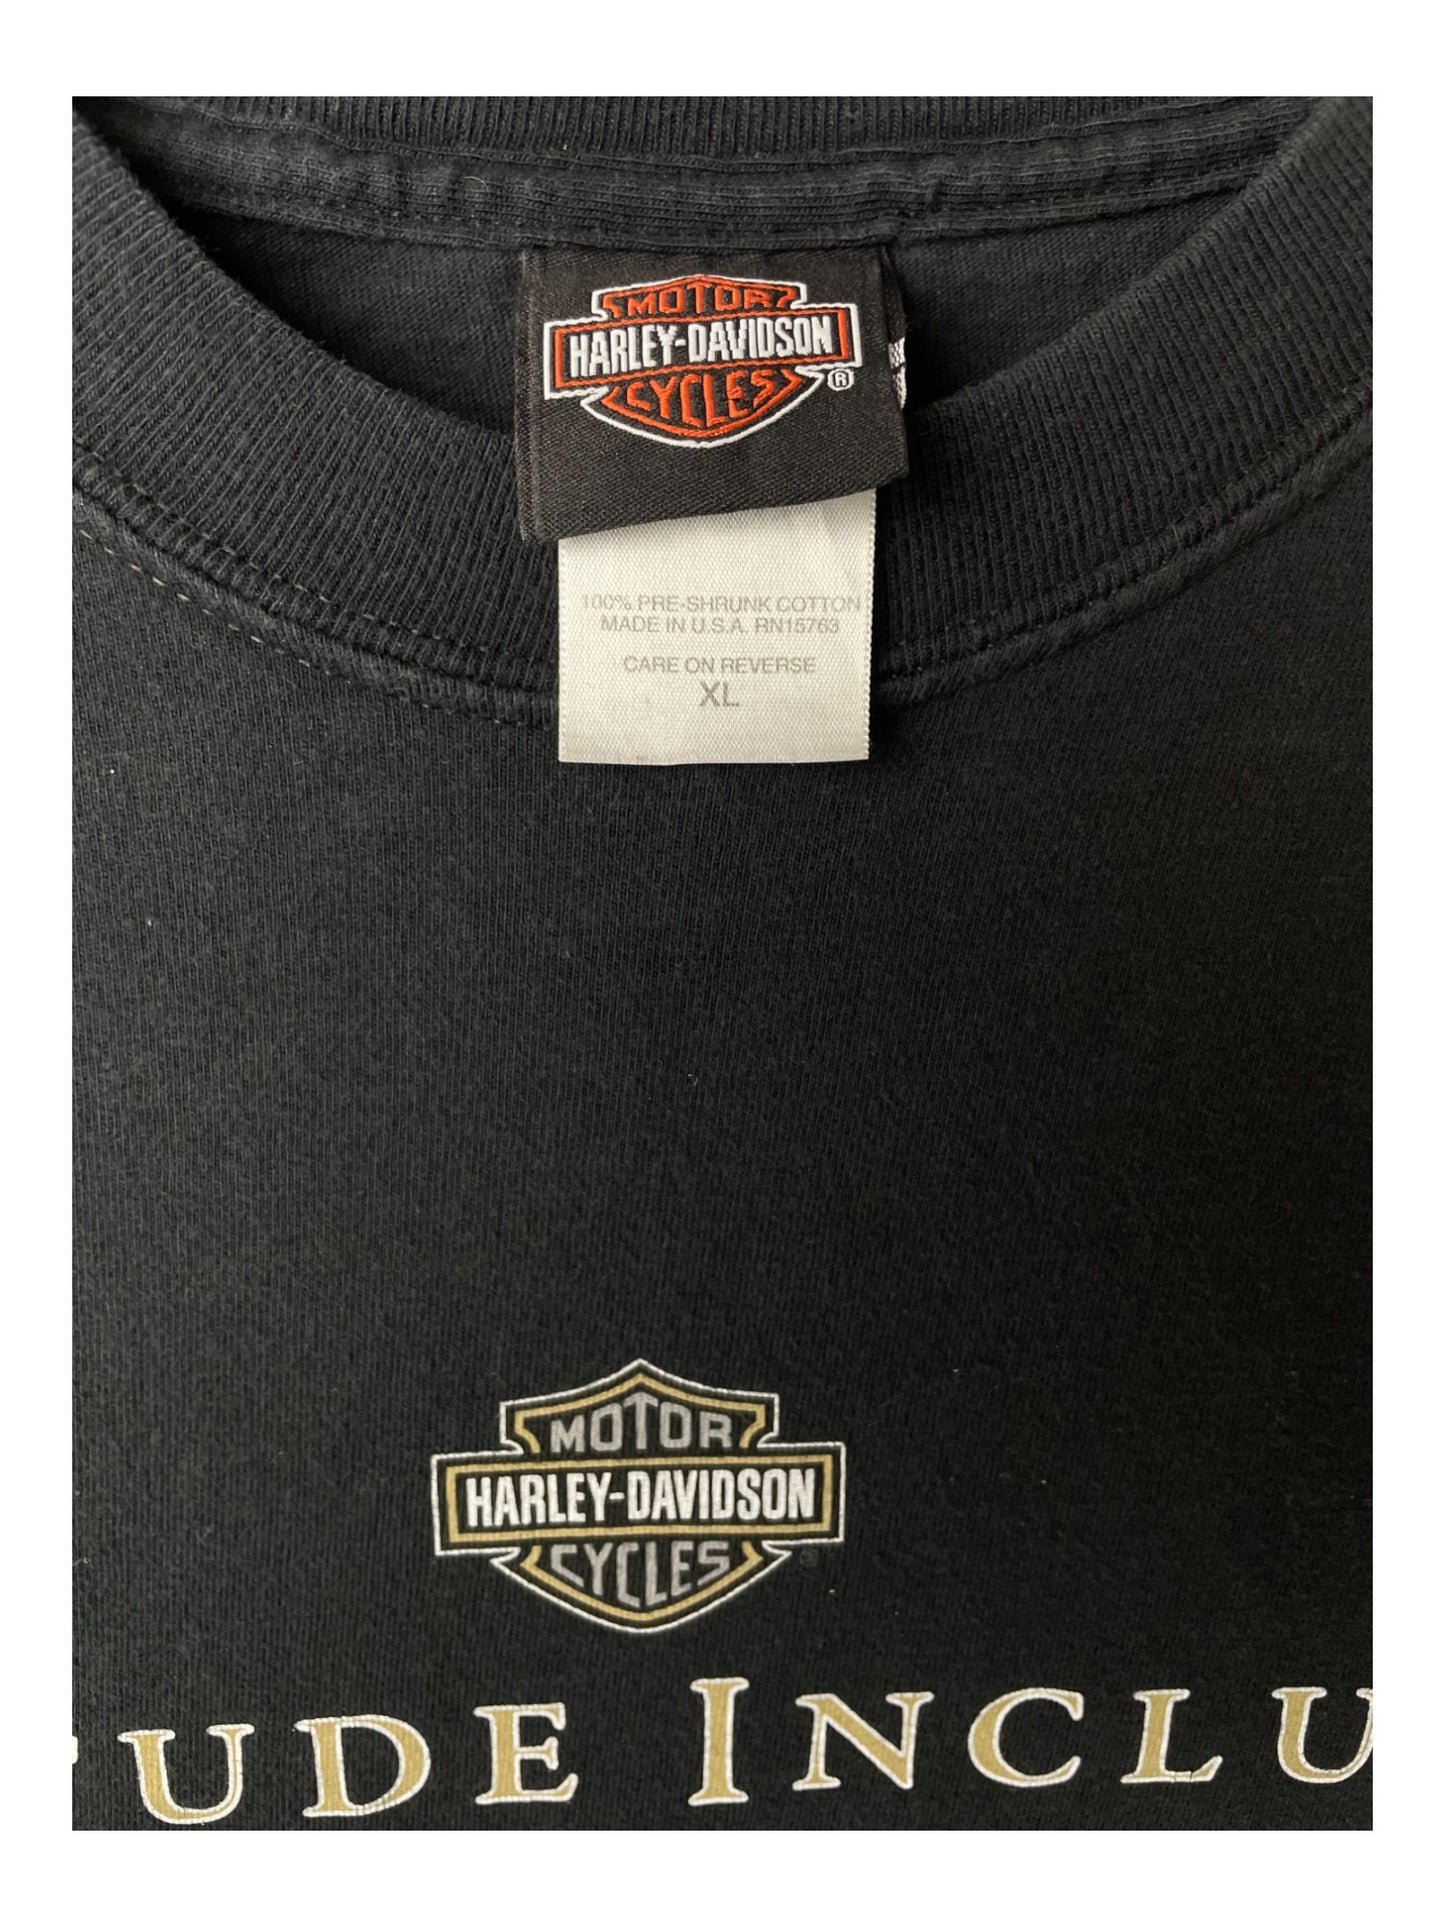 T-Shirt Big Barn Harley-Davidson